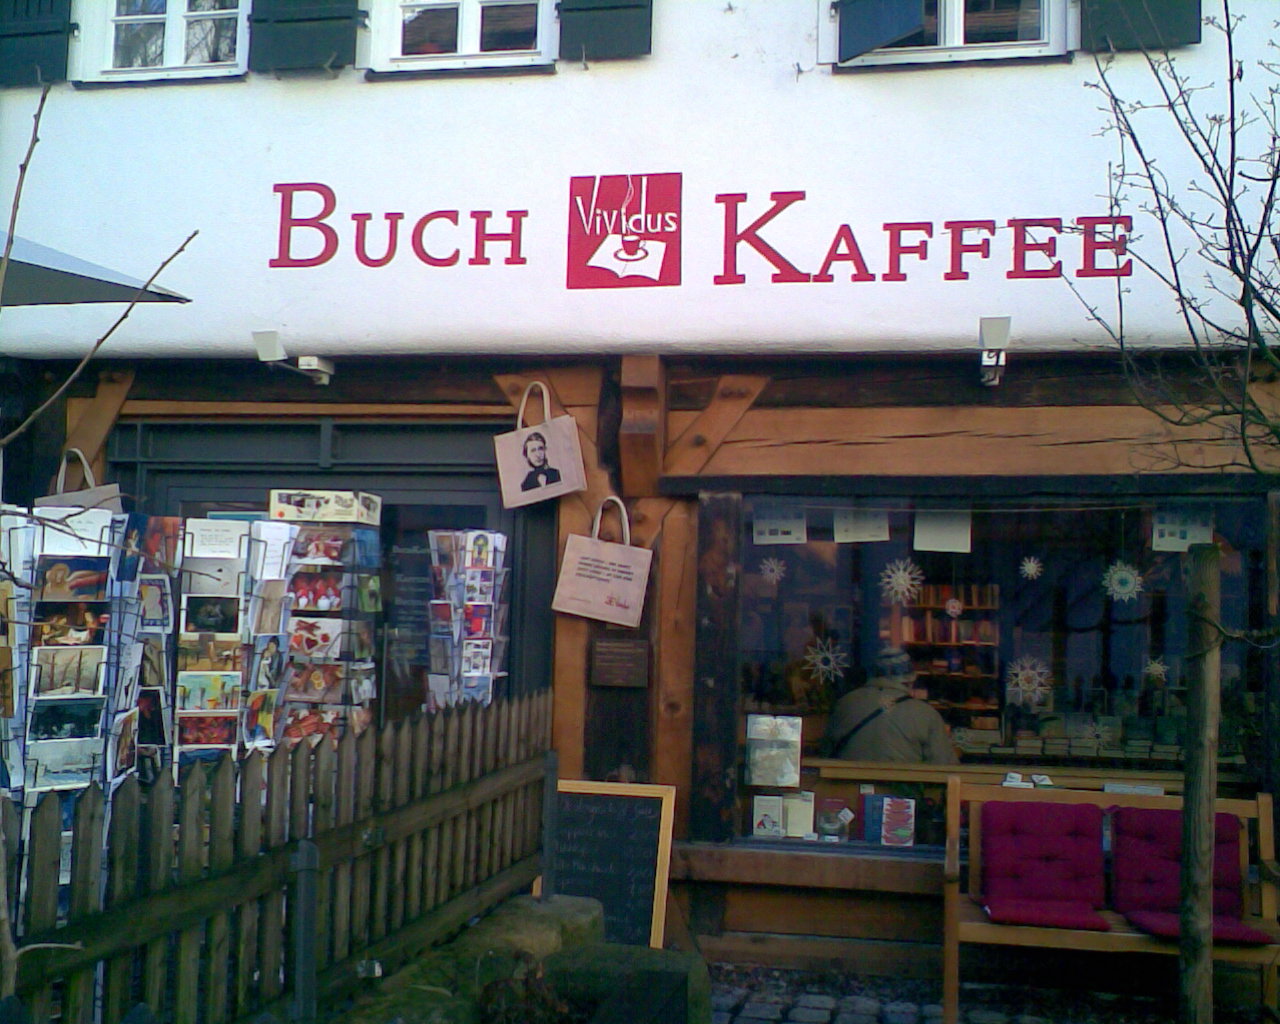 Bild 1 Buchkaffee Vividus in Tübingen